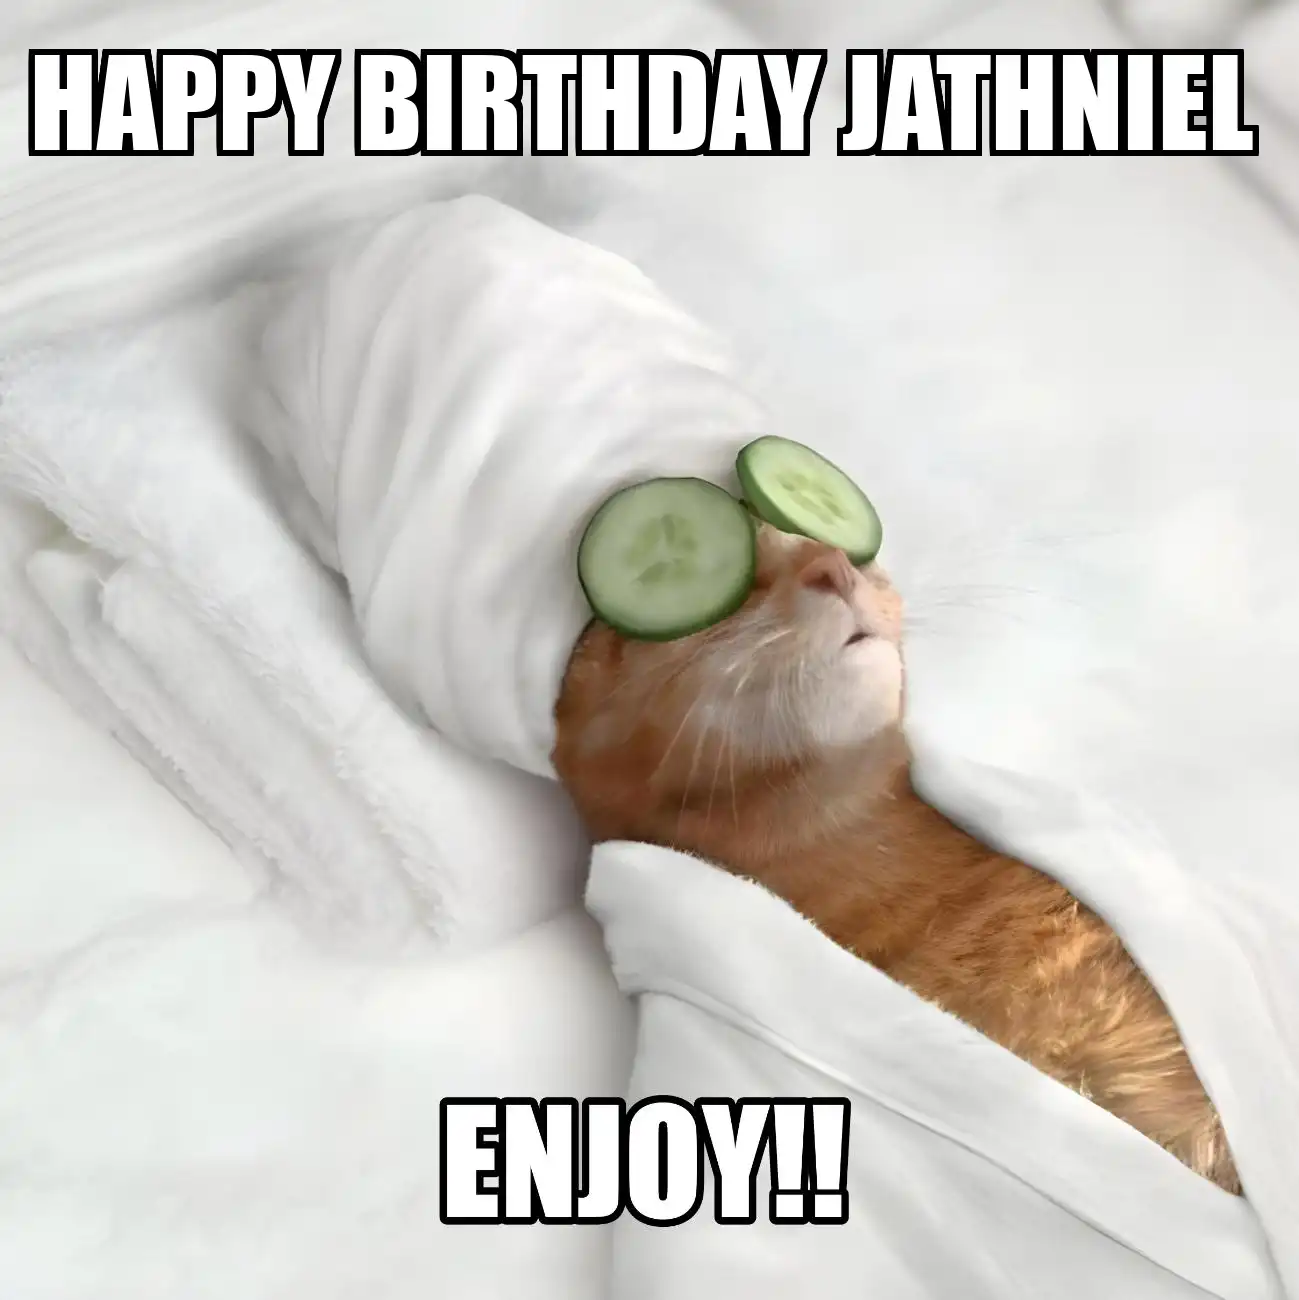 Happy Birthday Jathniel Enjoy Cat Meme